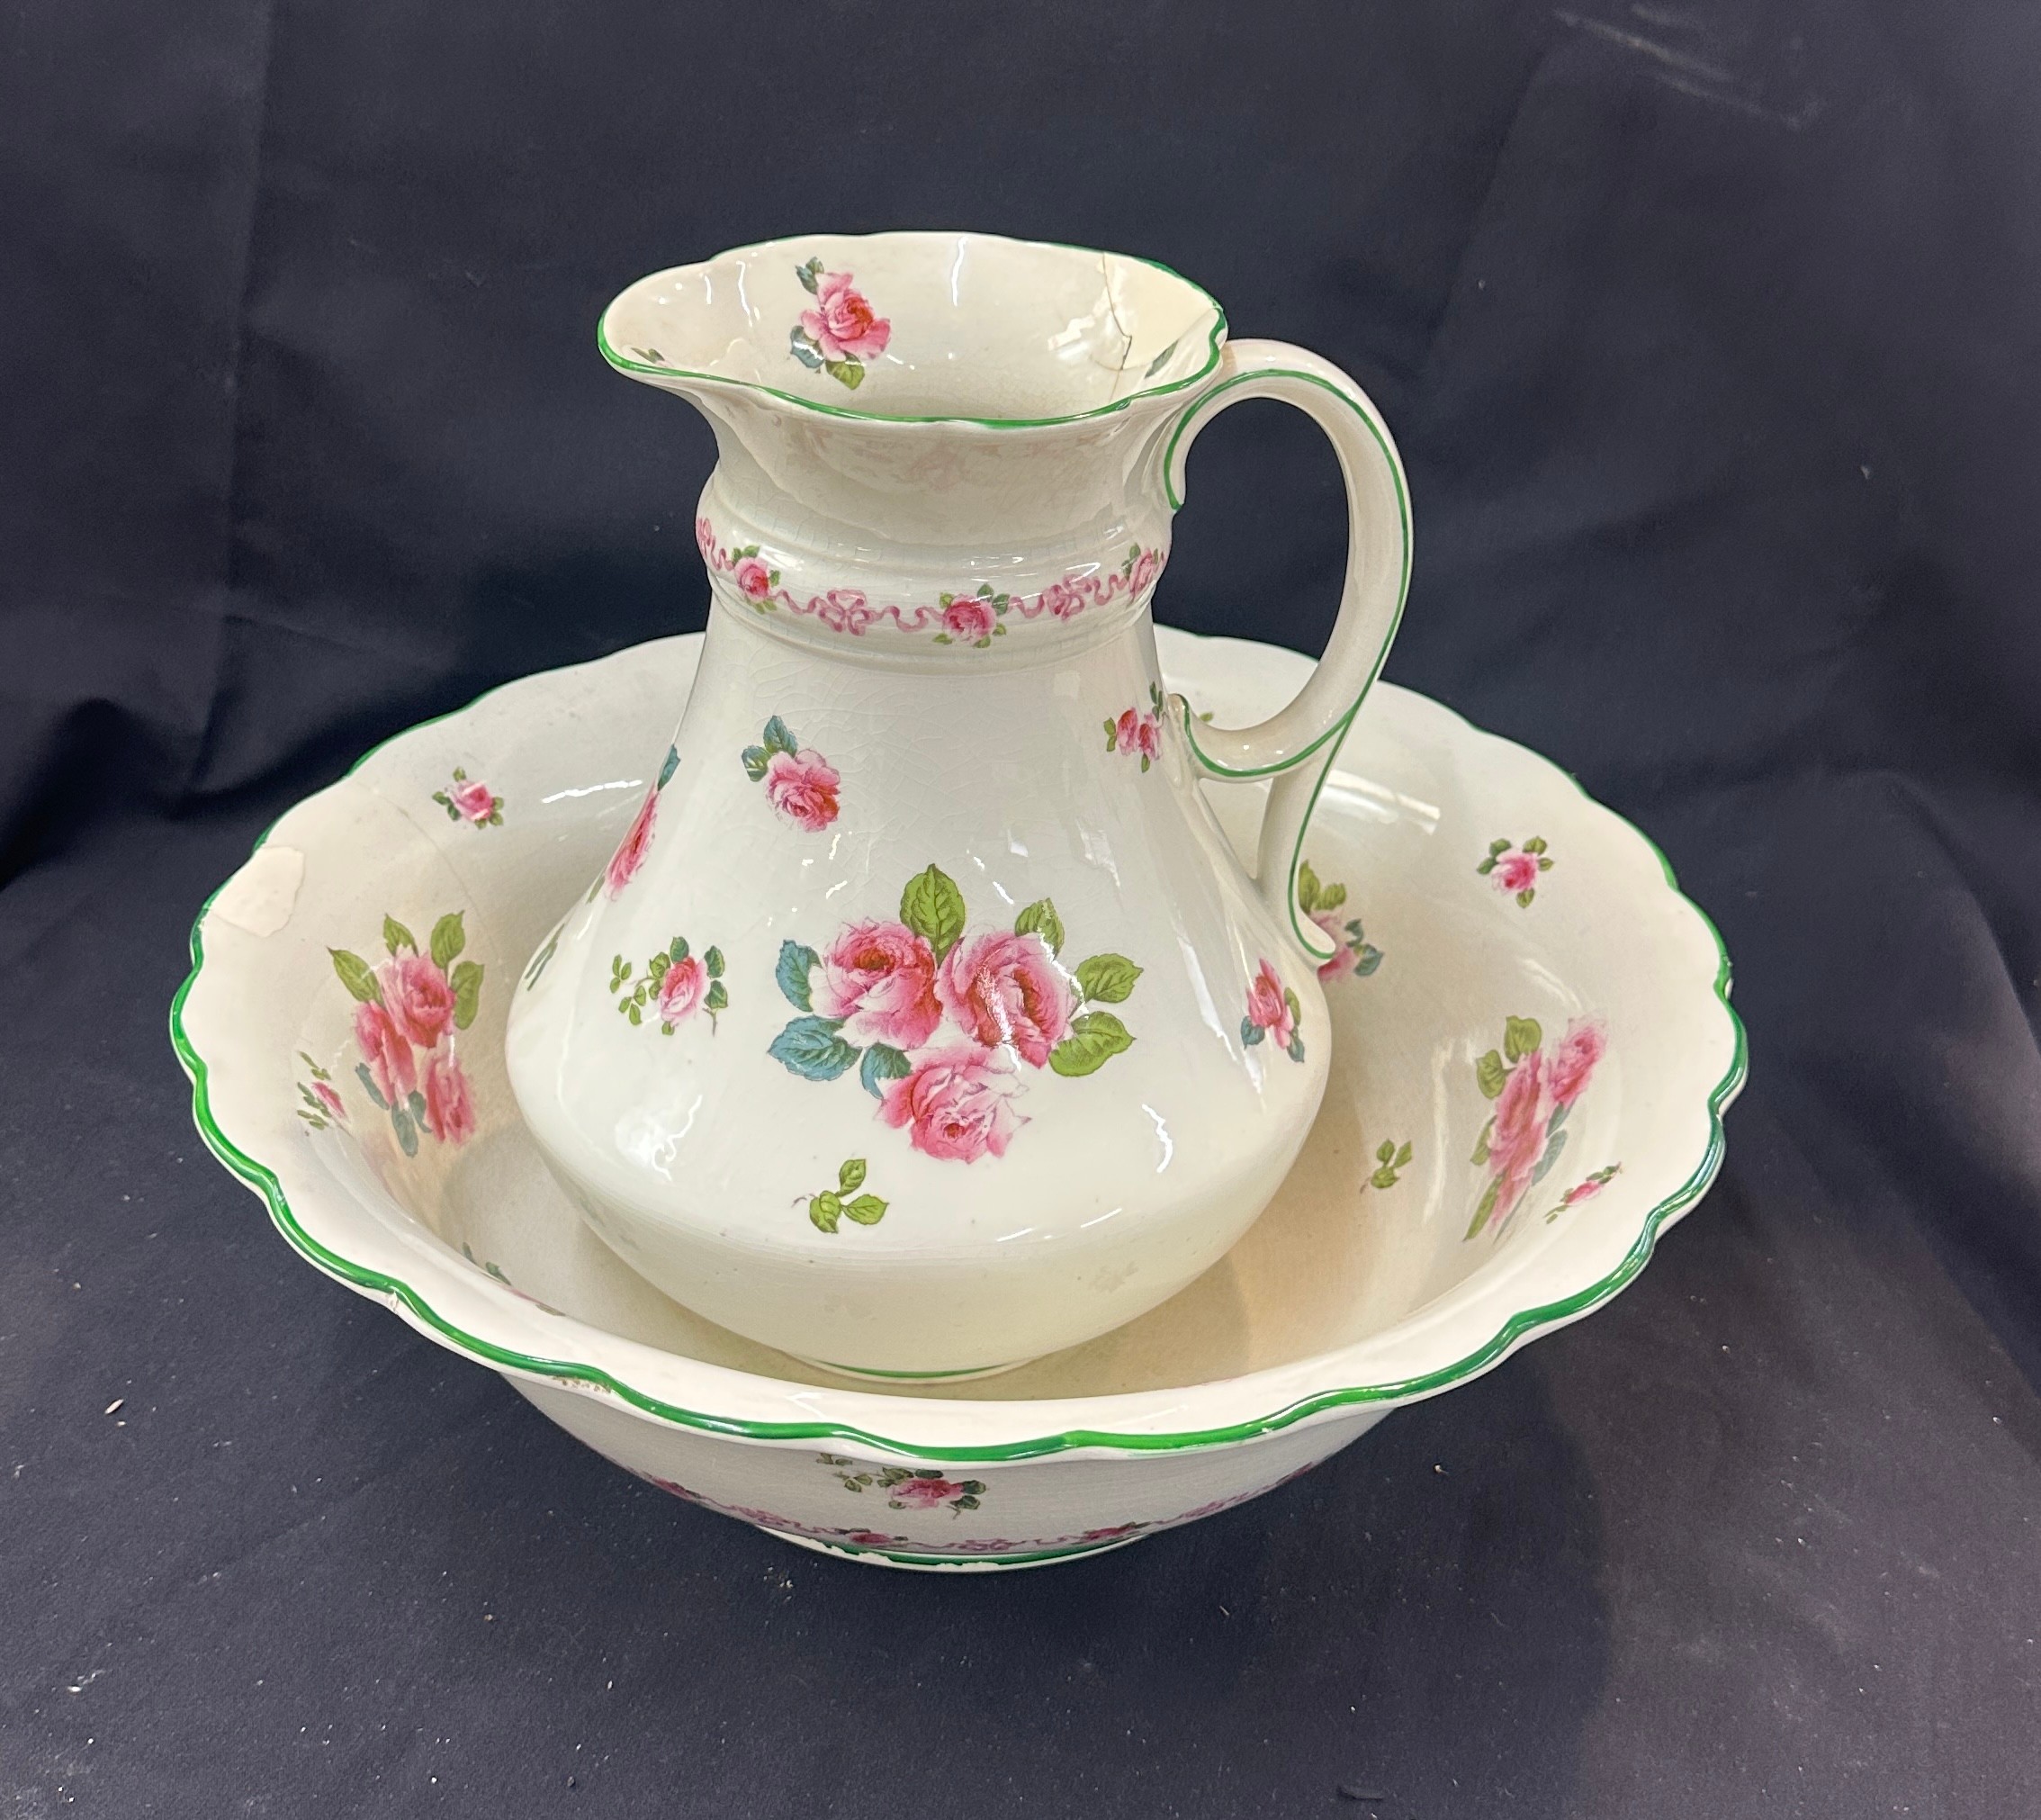 Vintage jug and bowl, Cresent quality england